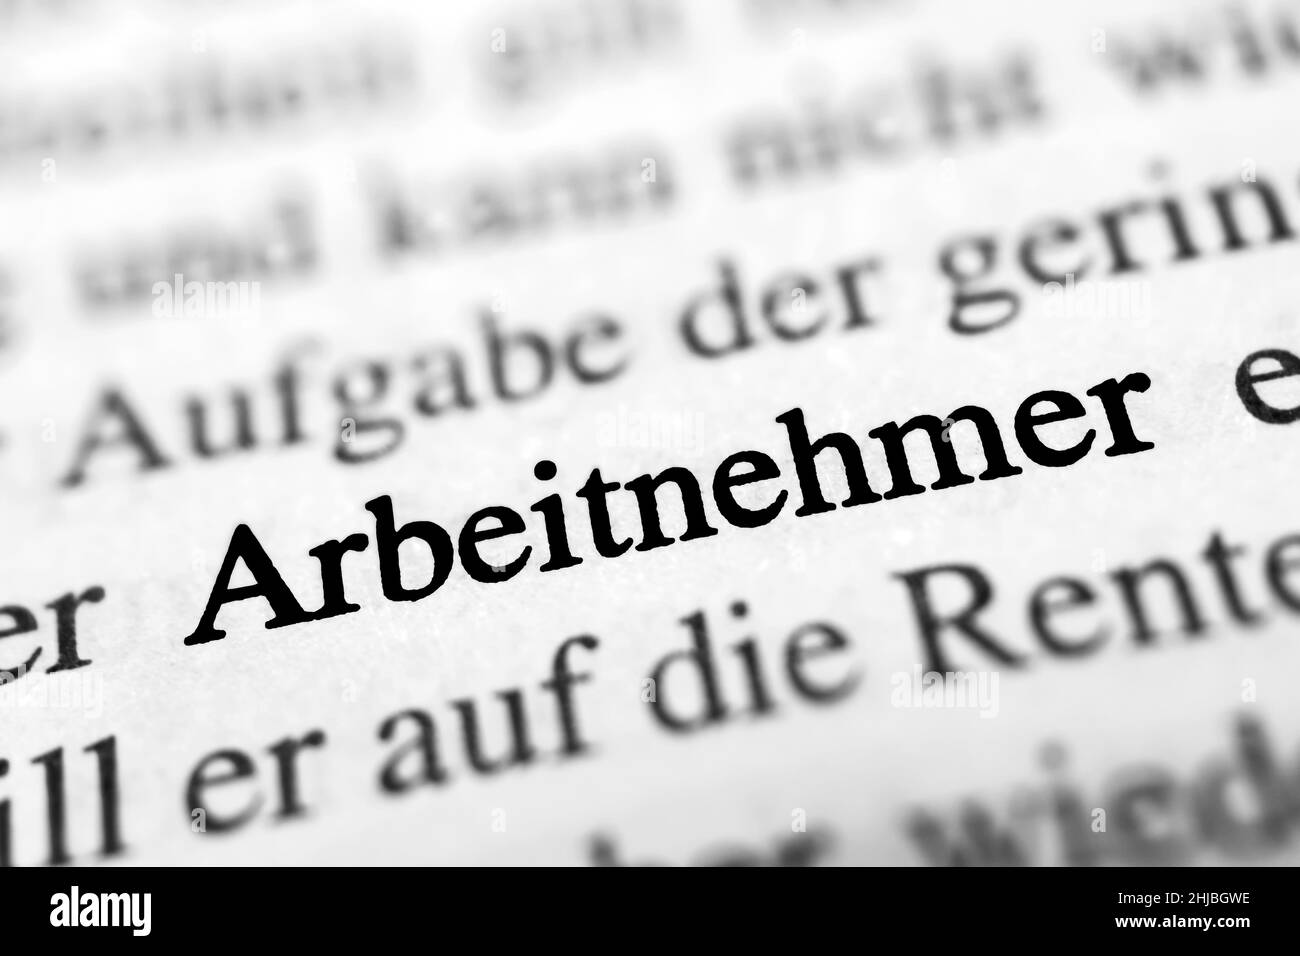 Gros plan sur le mot allemand en surbrillance 'Arbeitnehmer' dans un journal. Traduction : employé Banque D'Images